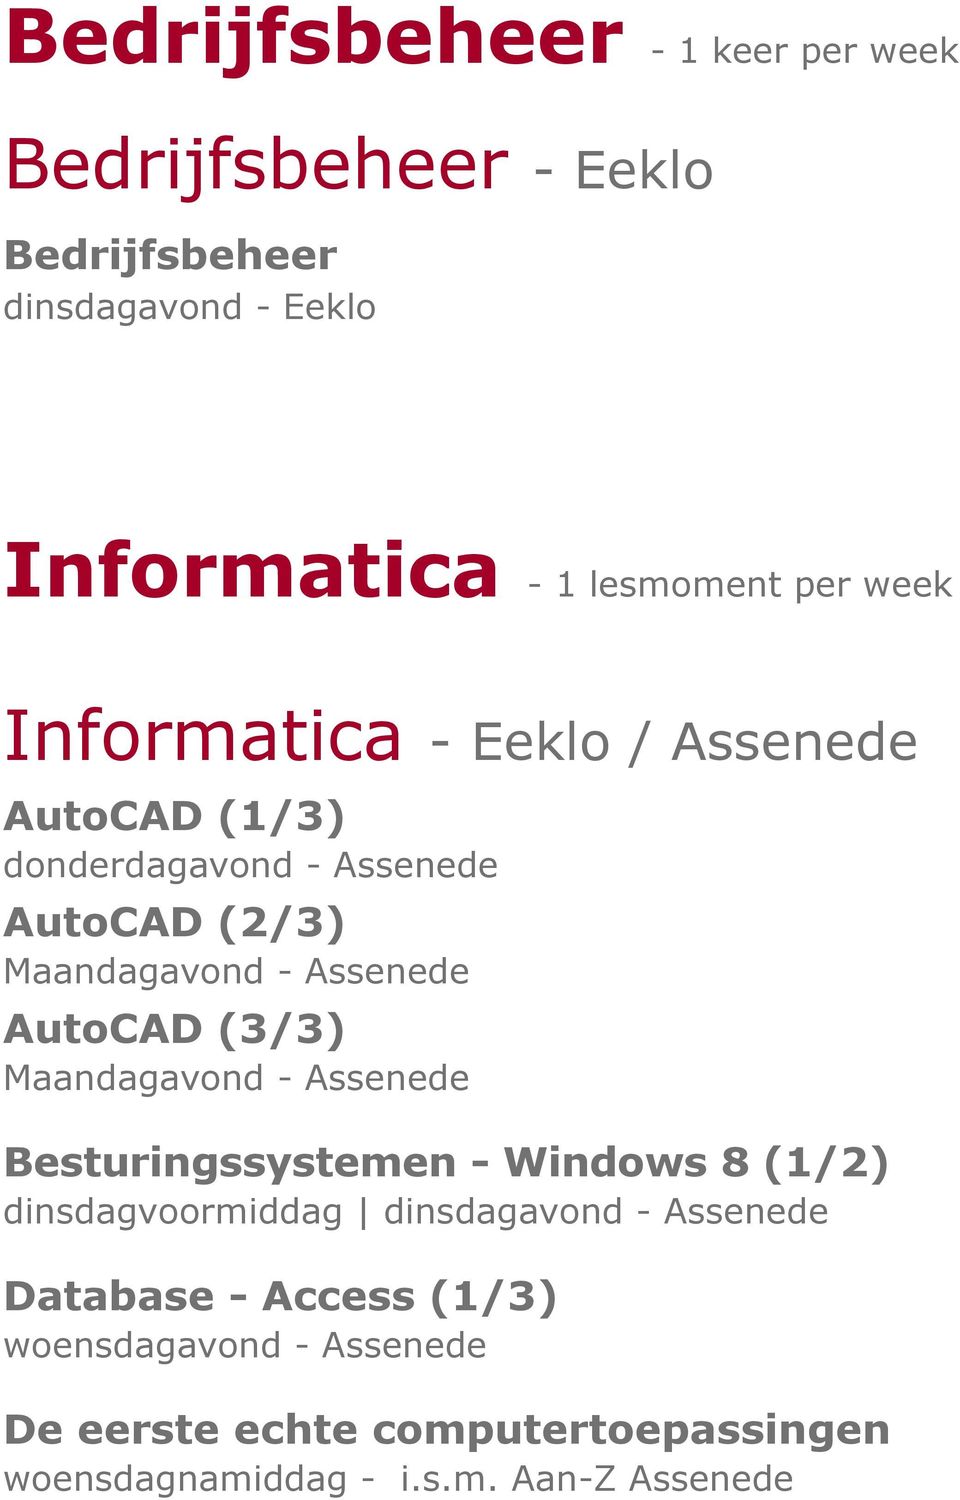 AutoCAD (3/3) Maandagavond - Assenede Besturingssystemen - Windows 8 (1/2) dinsdagvoormiddag dinsdagavond - Assenede